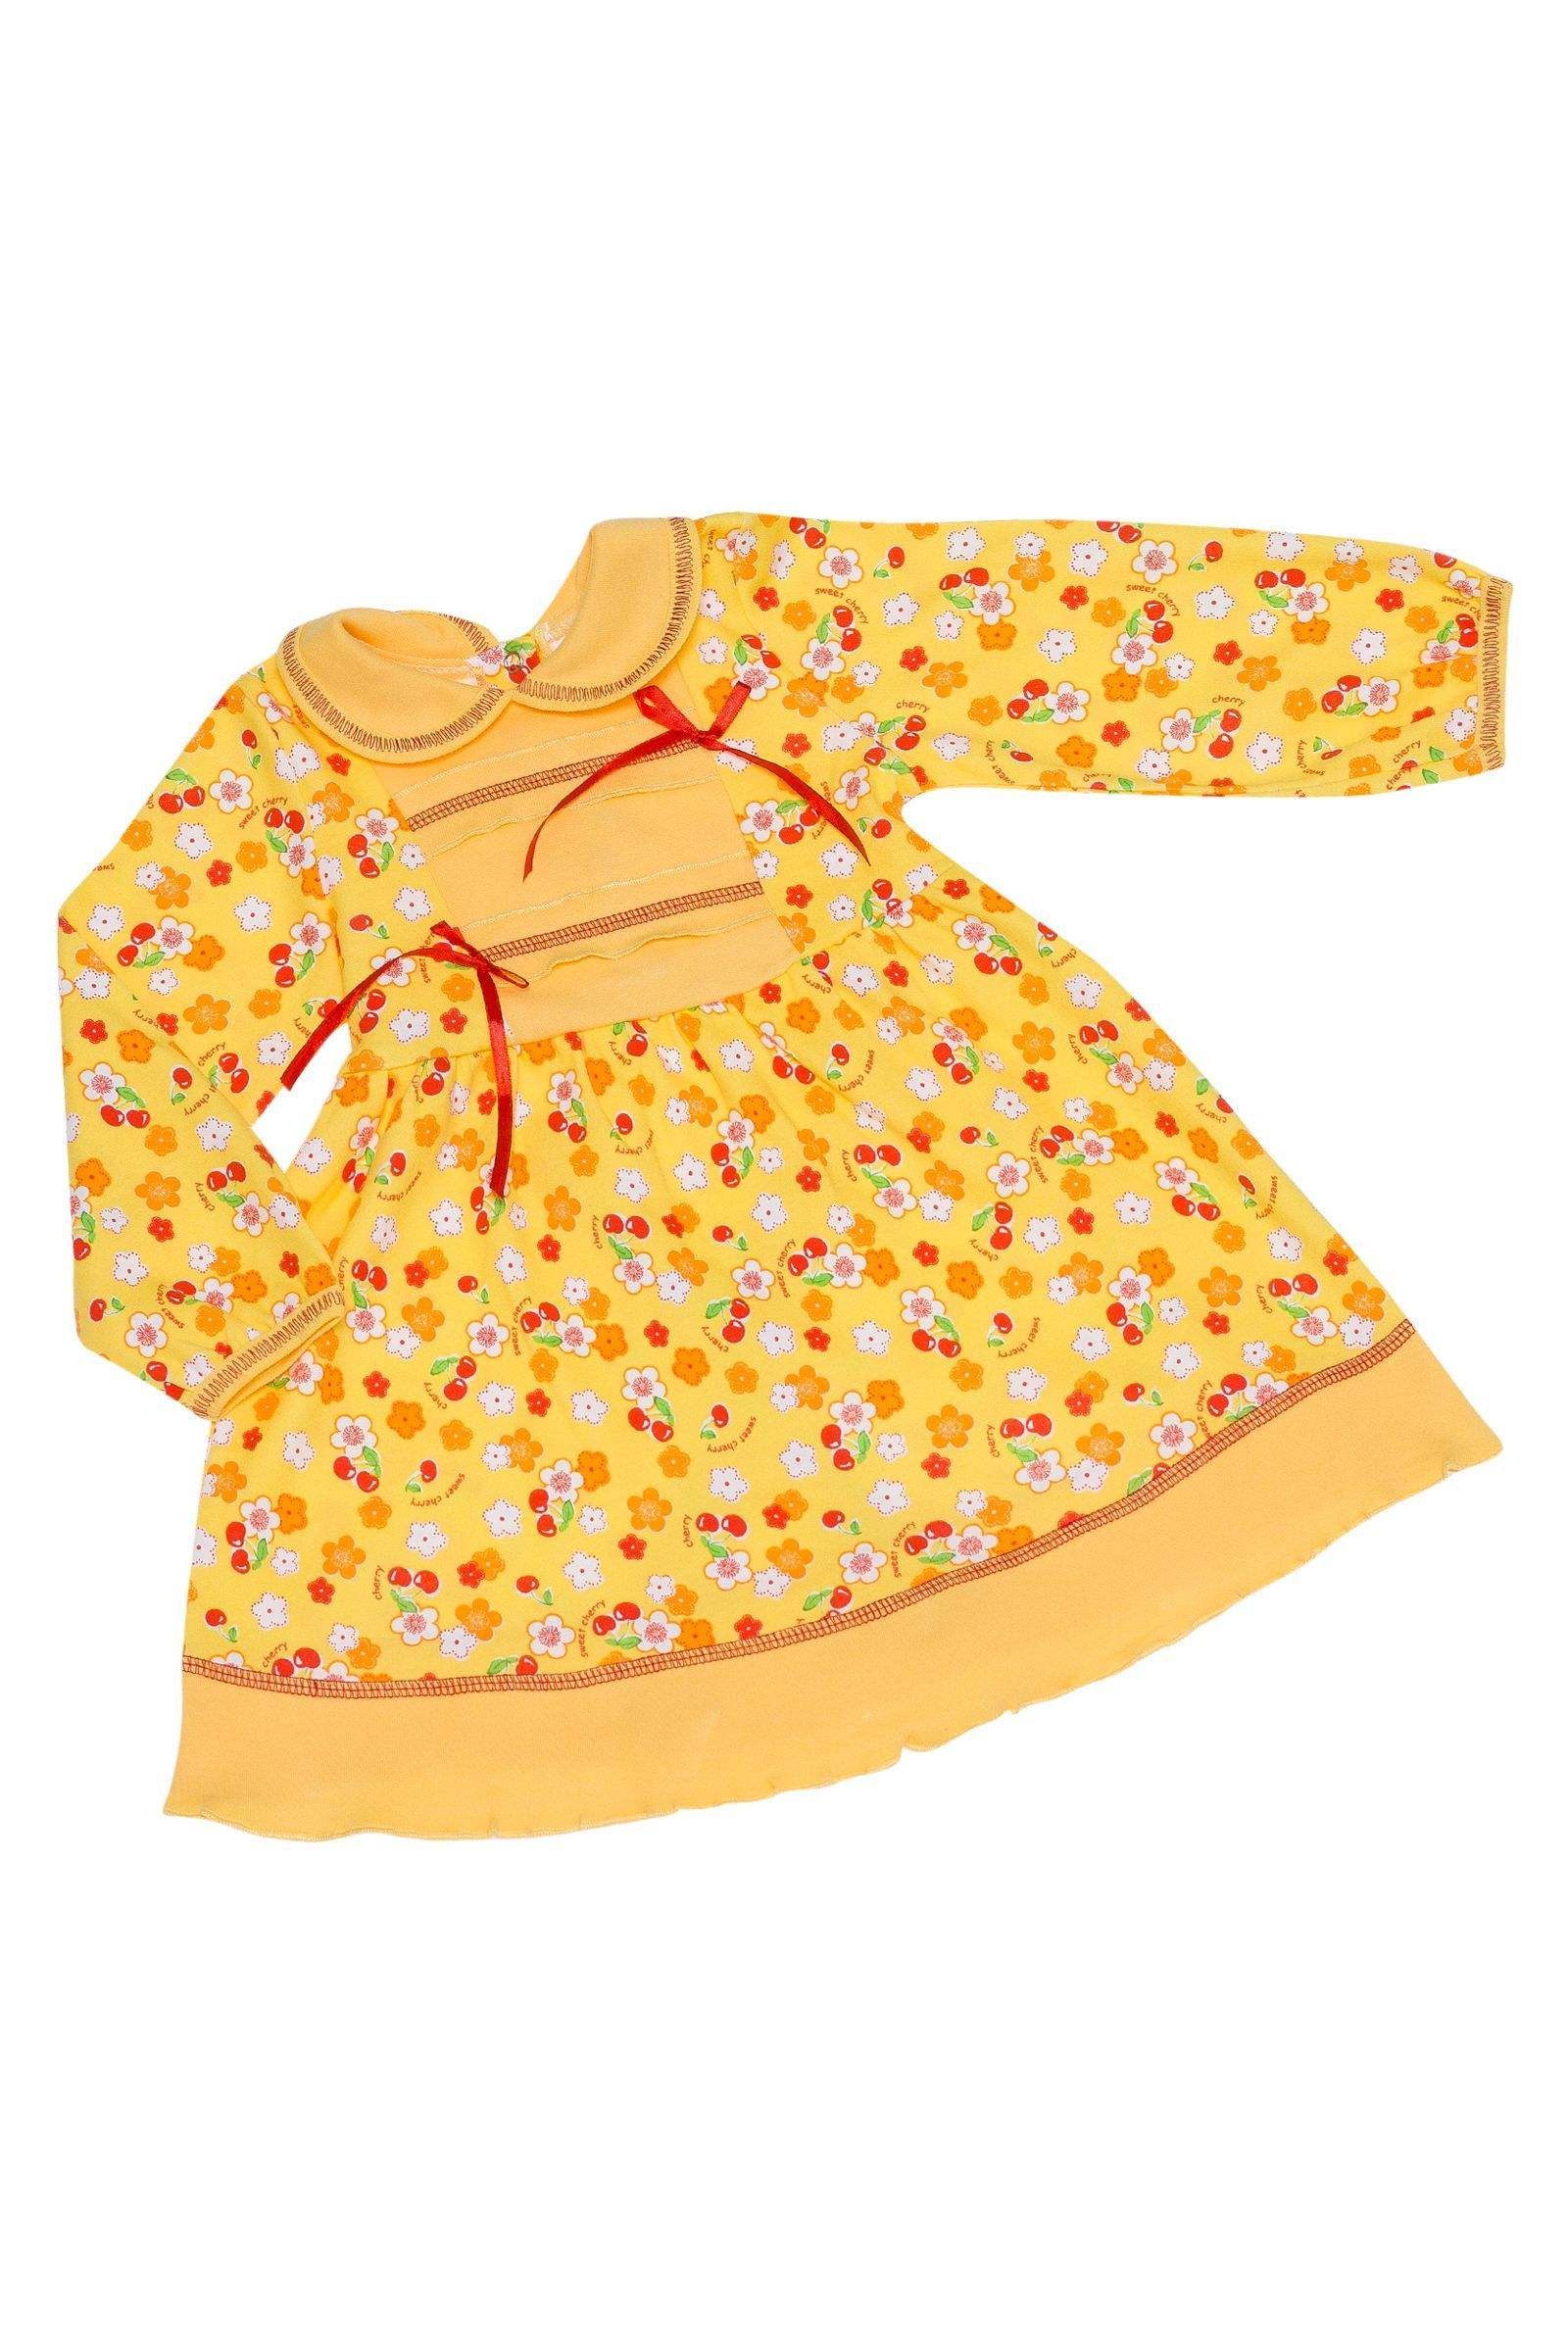 Платье-ПЛ01-609 оптом от производителя детской одежды 'Алёна'